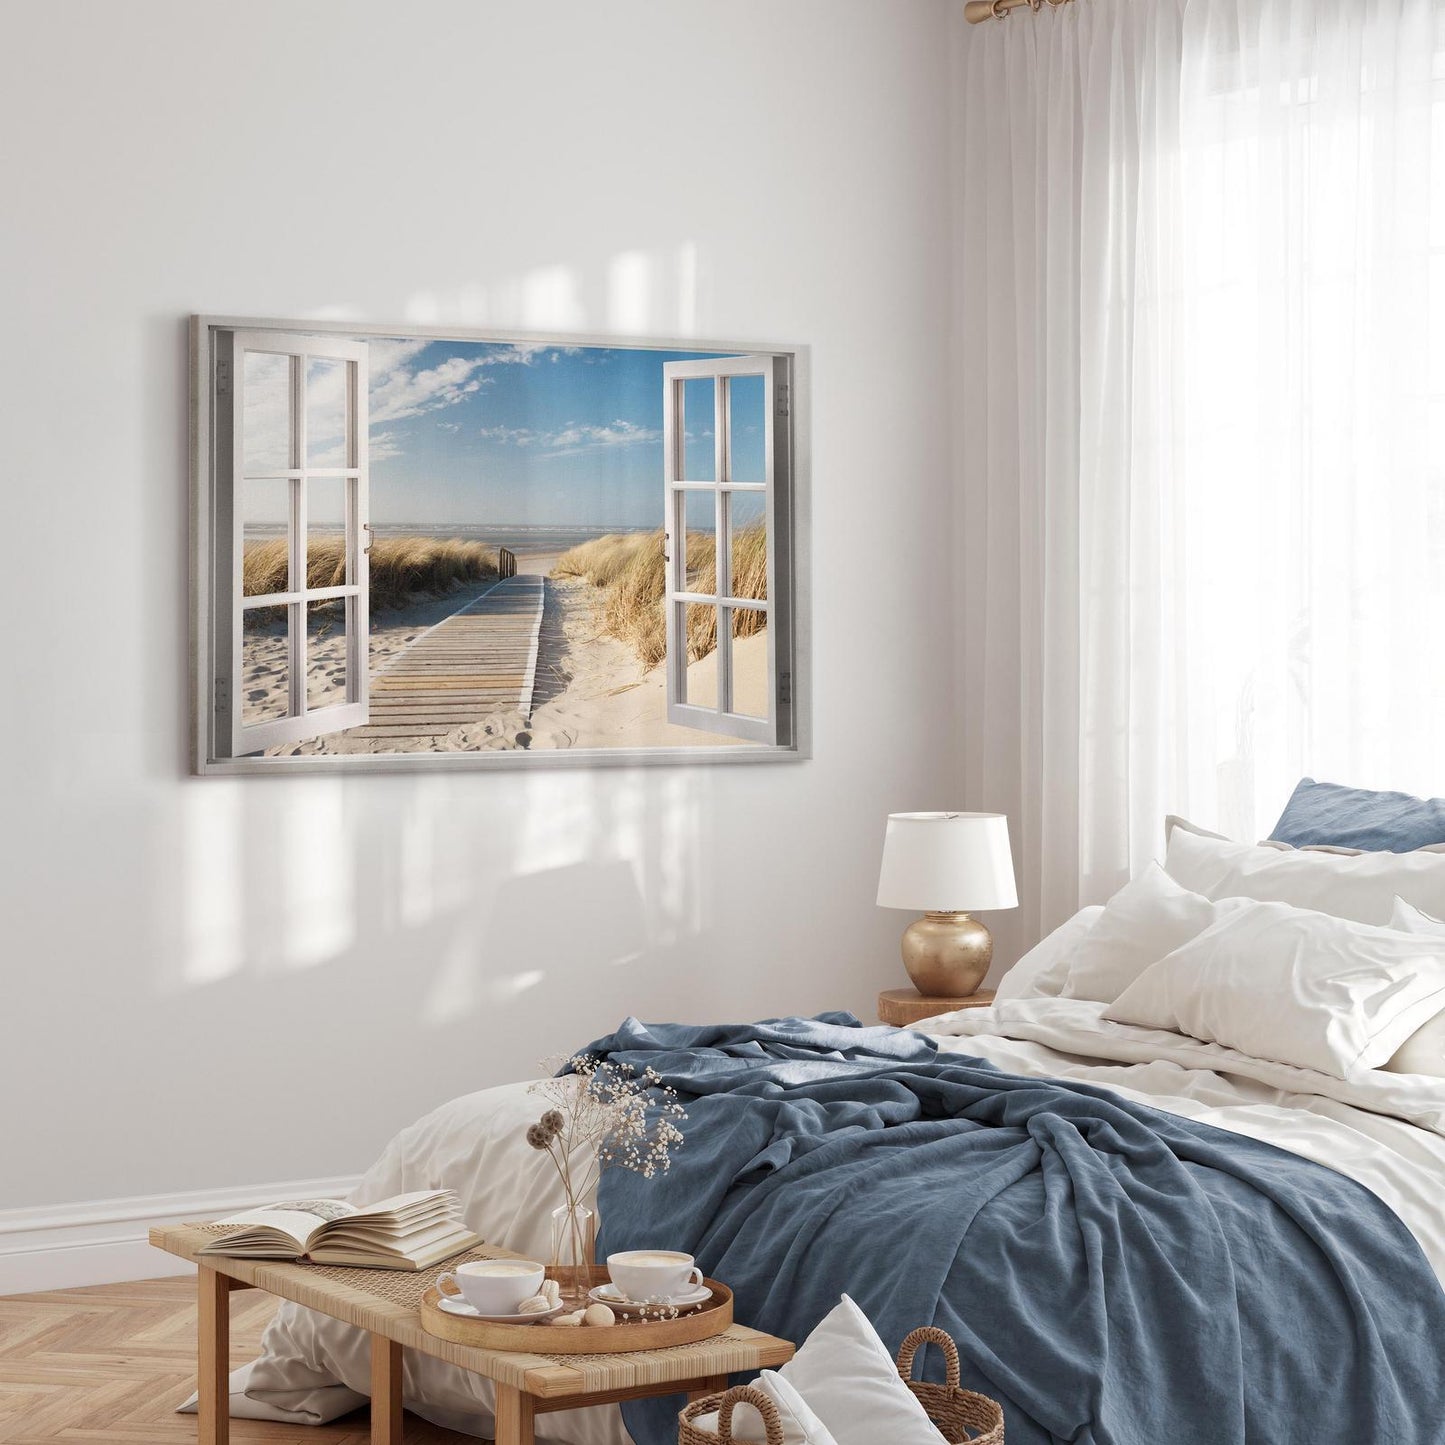 Schilderij - Window: View of the Beach